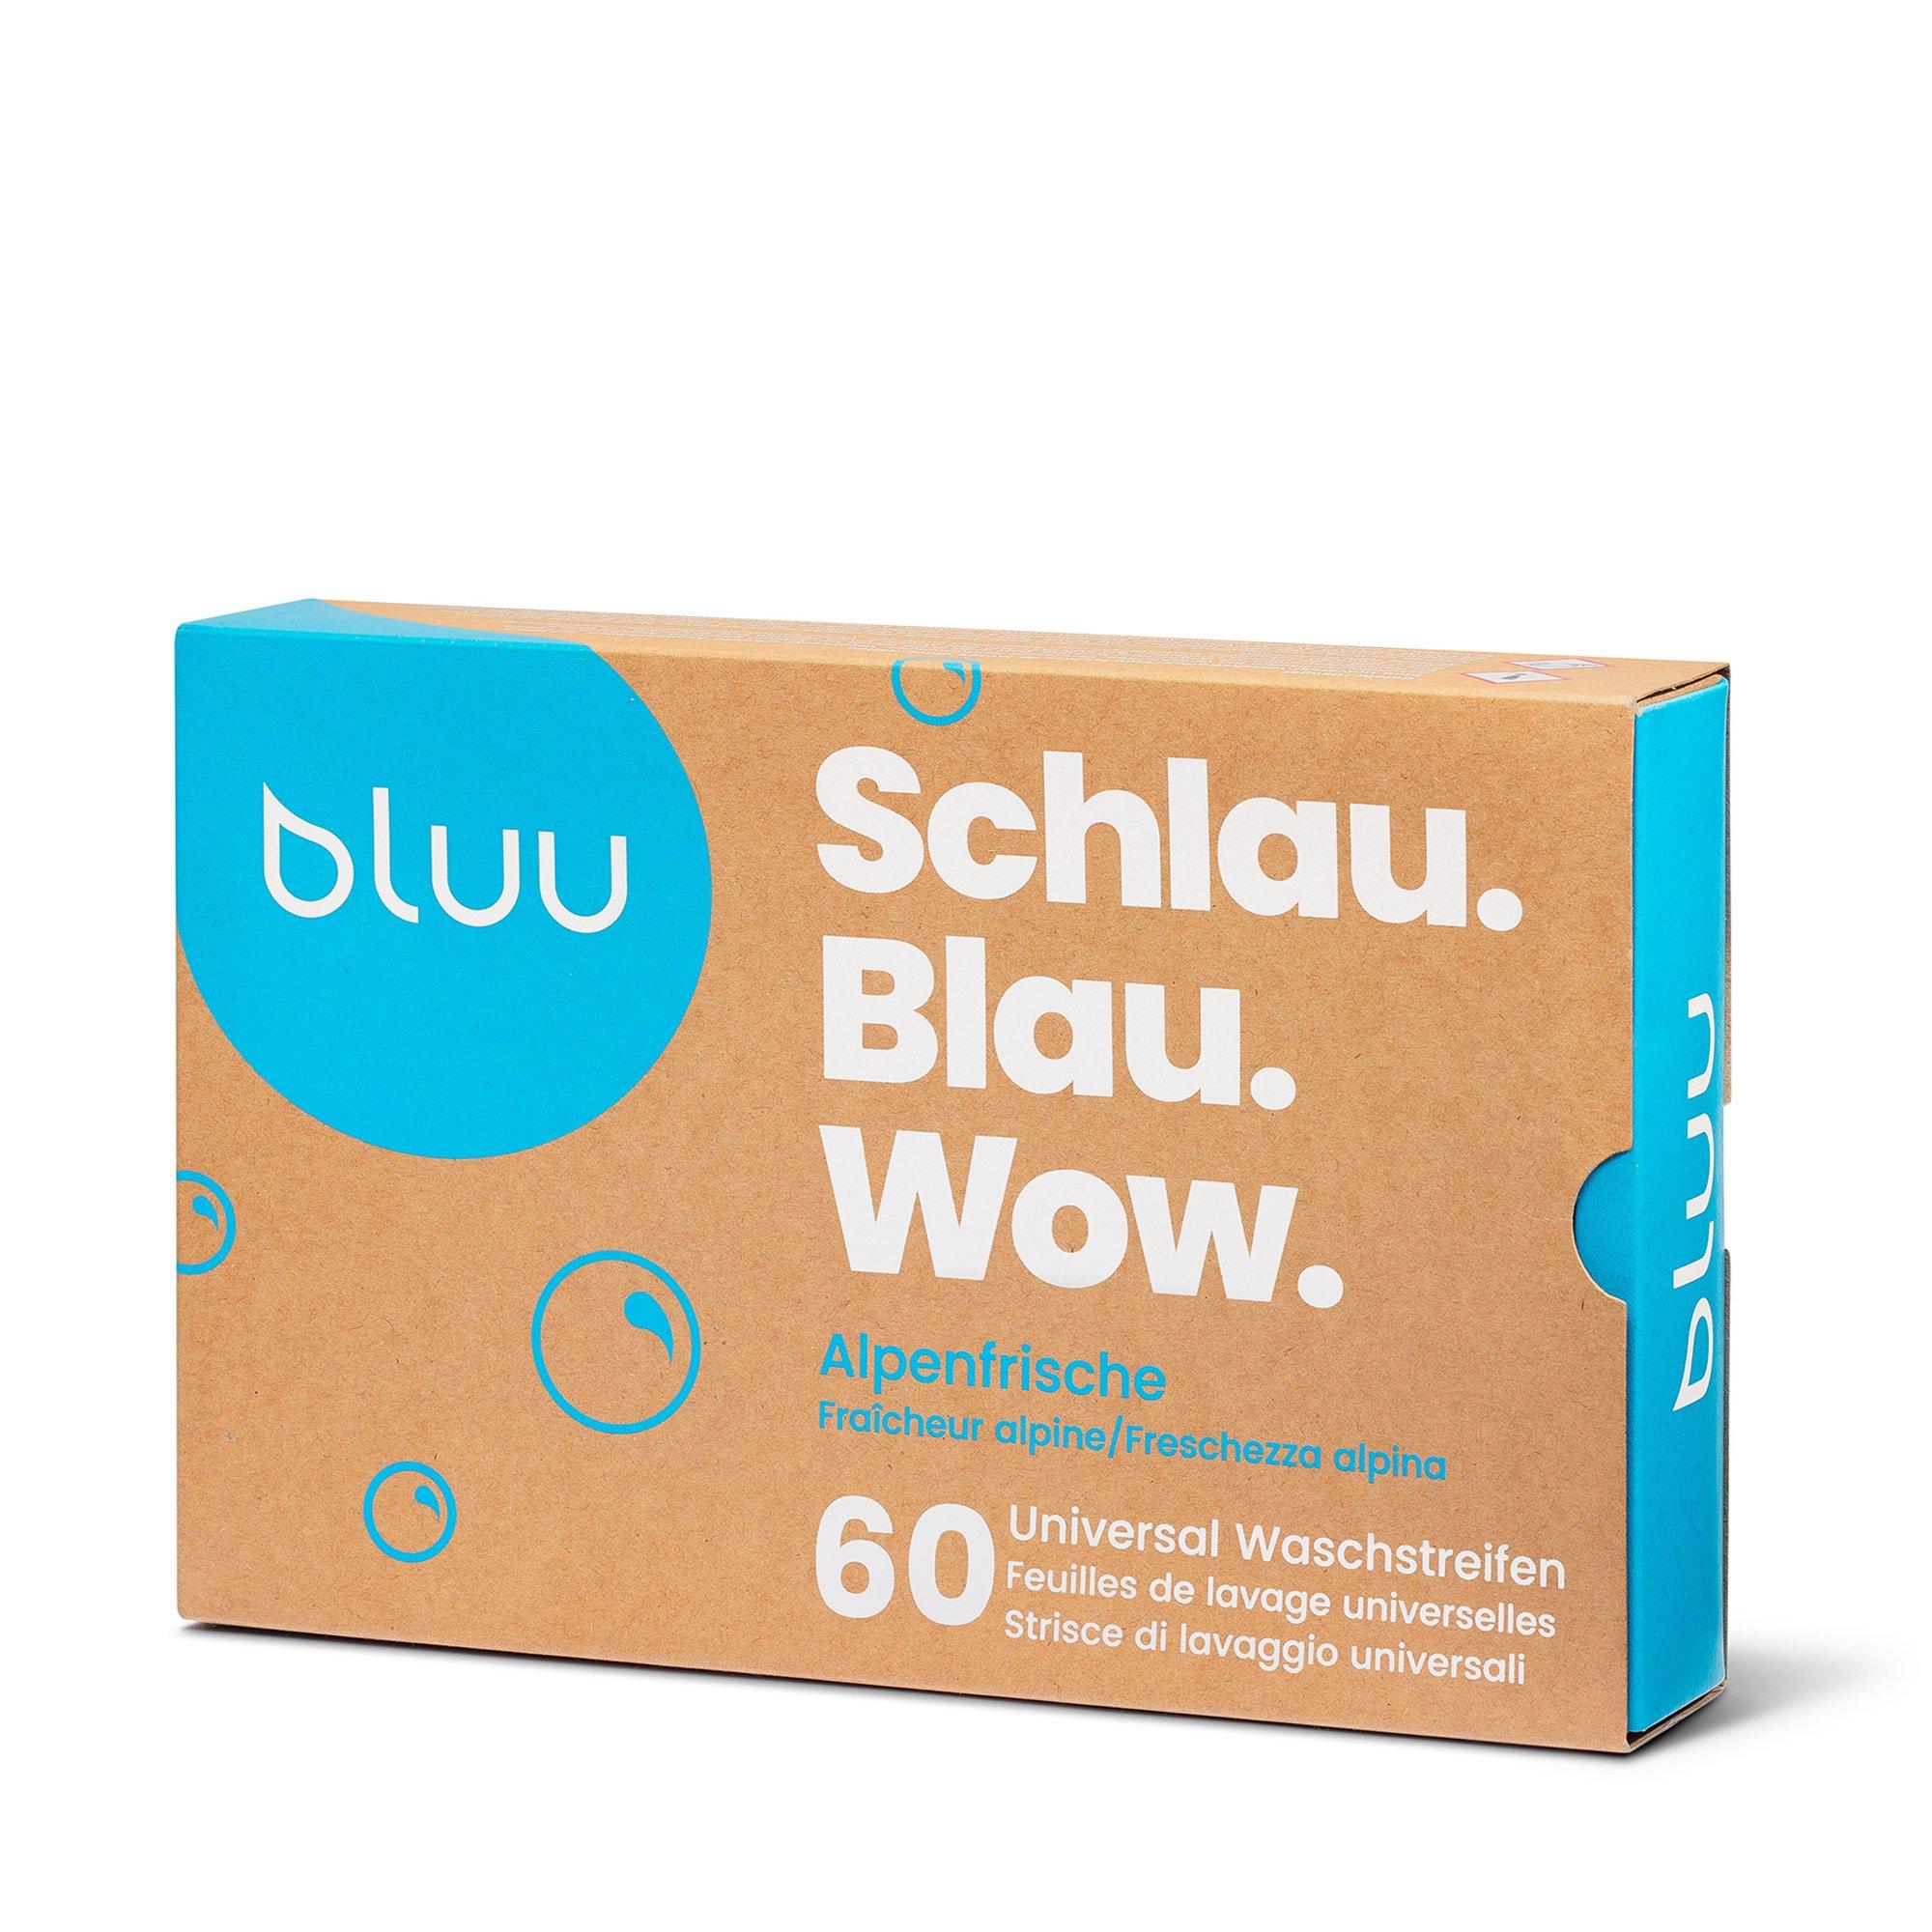 Image of bluu Universal Waschstreifen - 60 pezzi